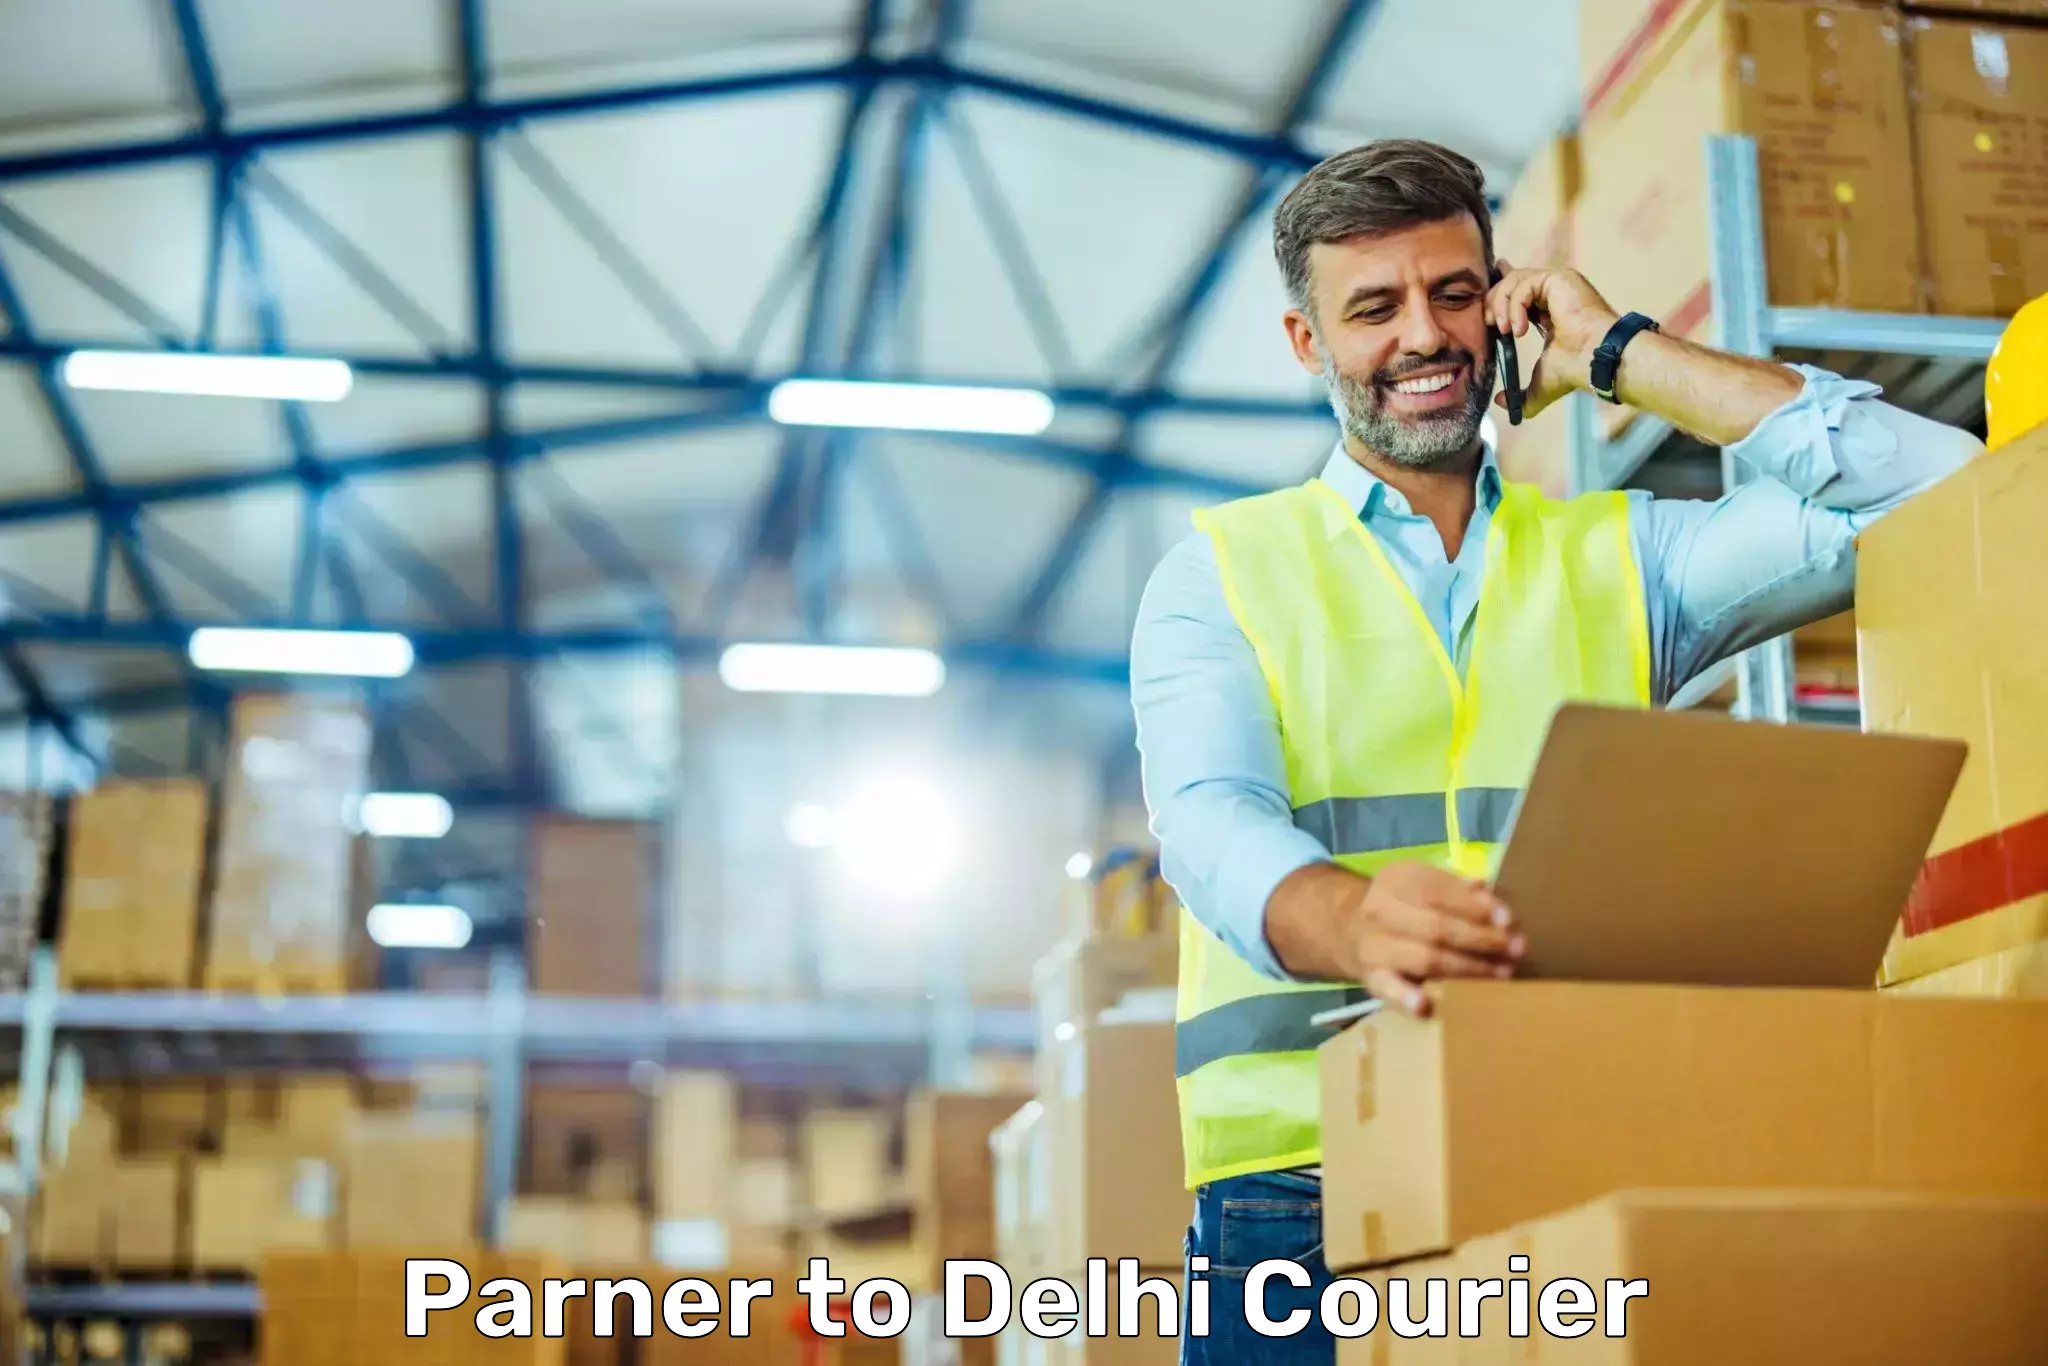 Affordable parcel service Parner to Delhi